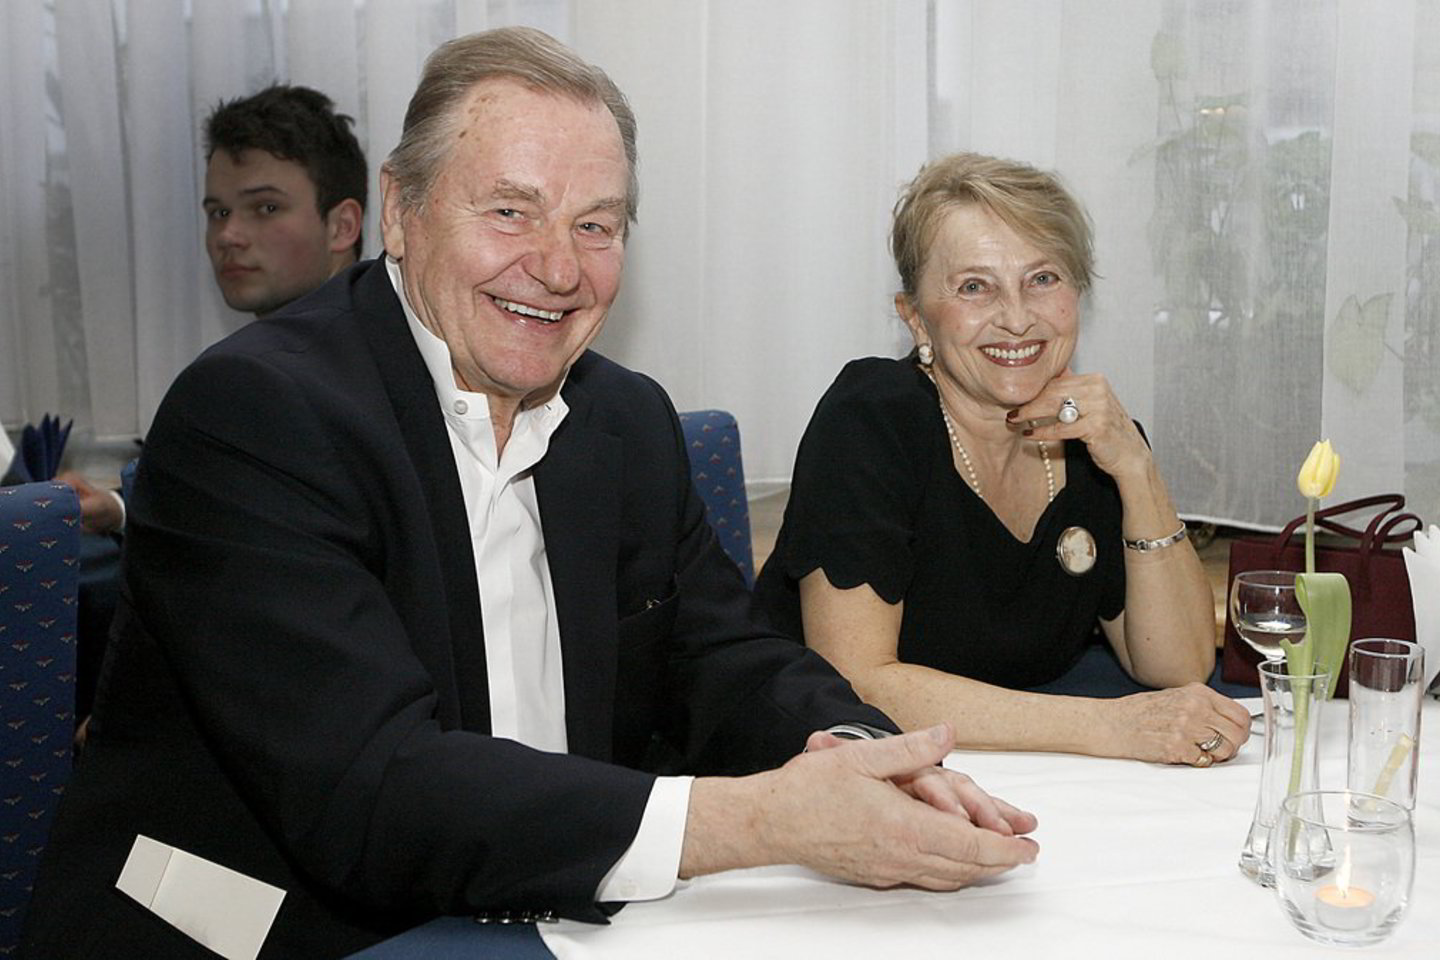 LNOBT scenoje E.Kaniava po savaitės pasirodys su savo žmona Barbora.<br>V. Balkūnas